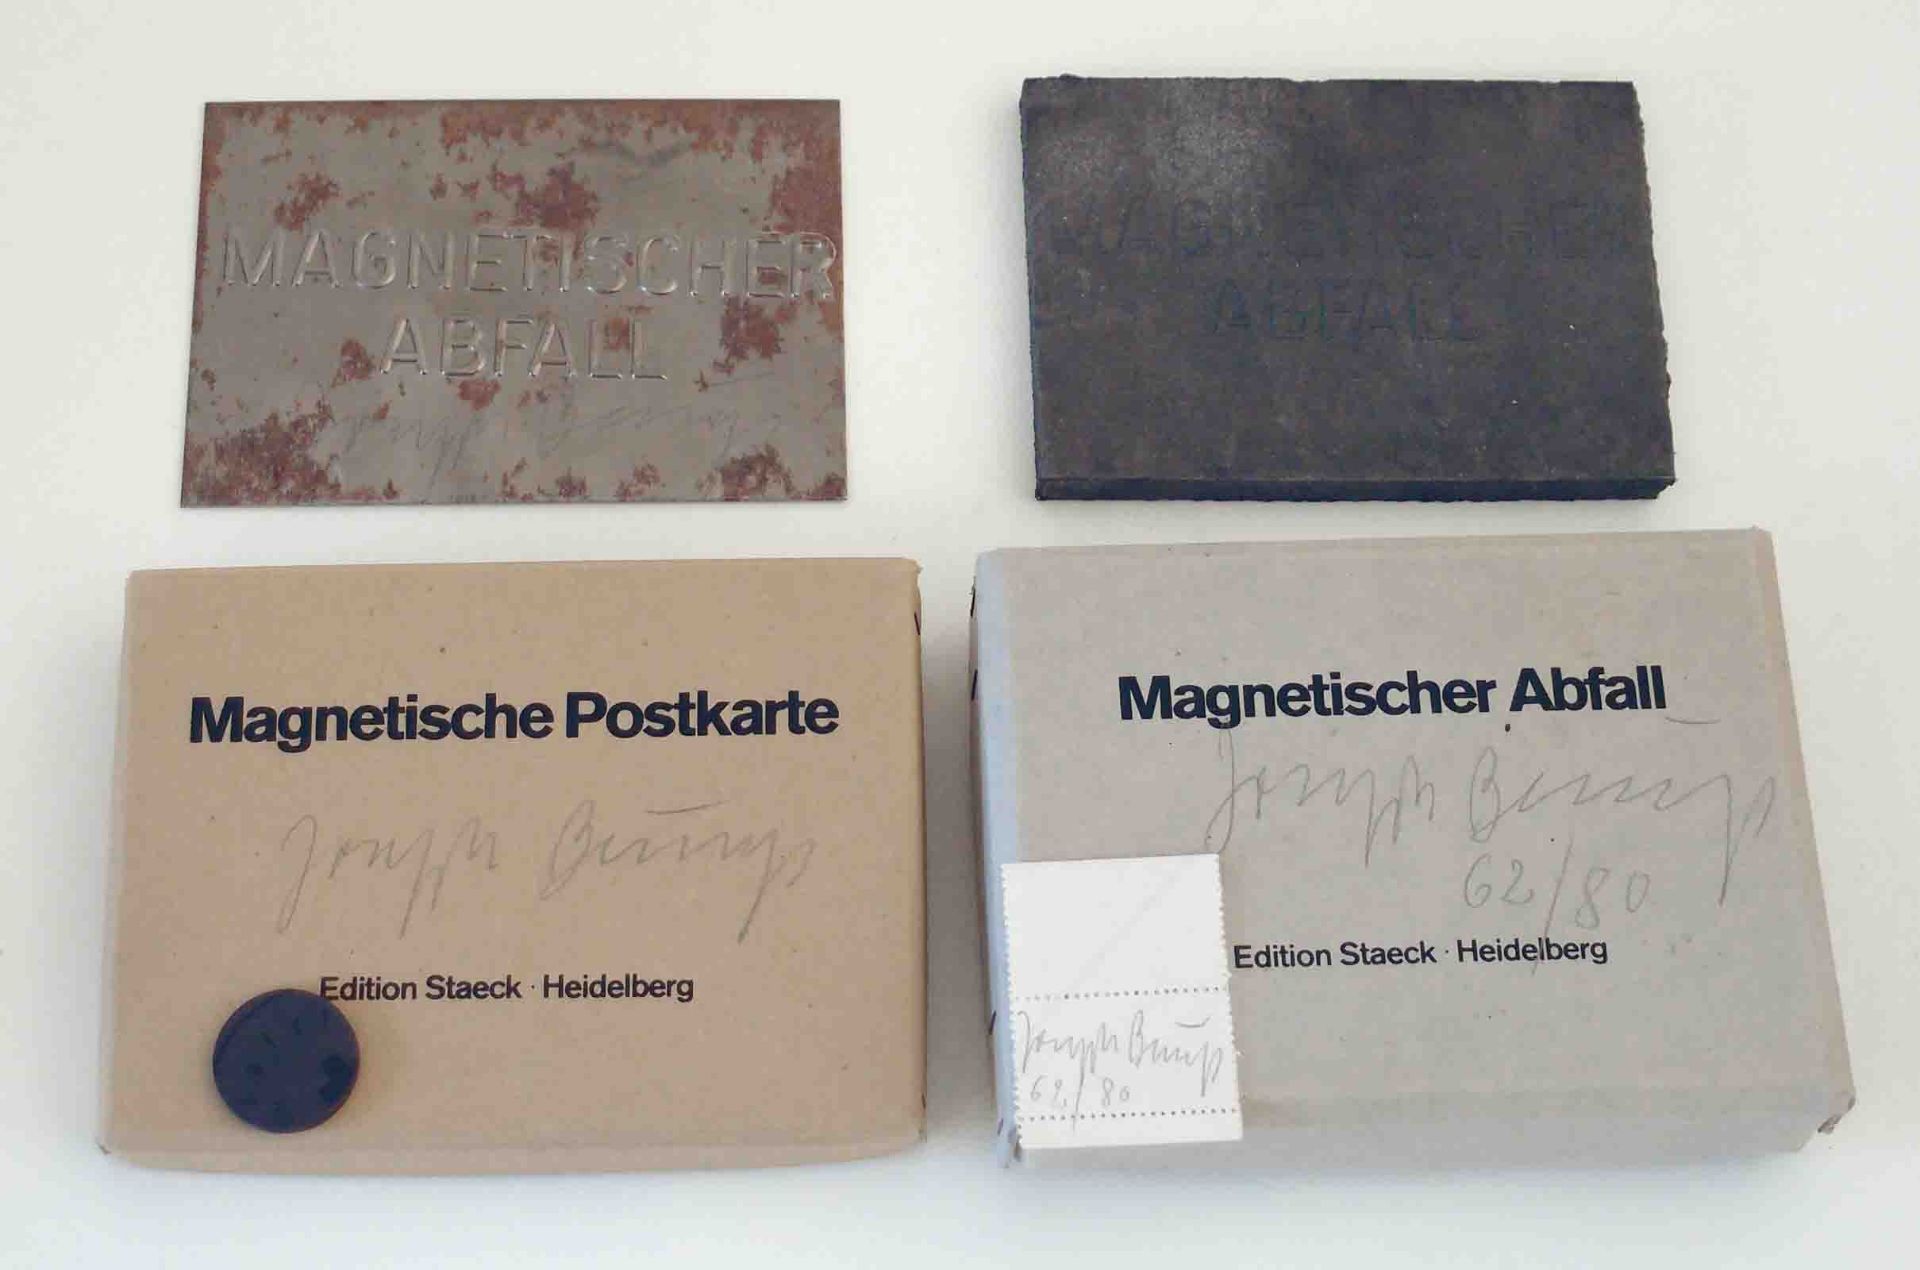 Joseph BeuysKrefeld 1921 - 1986 DüsseldorfMagnetischer Abfall. Magnetischer Gussstahl. 1975. 10,8